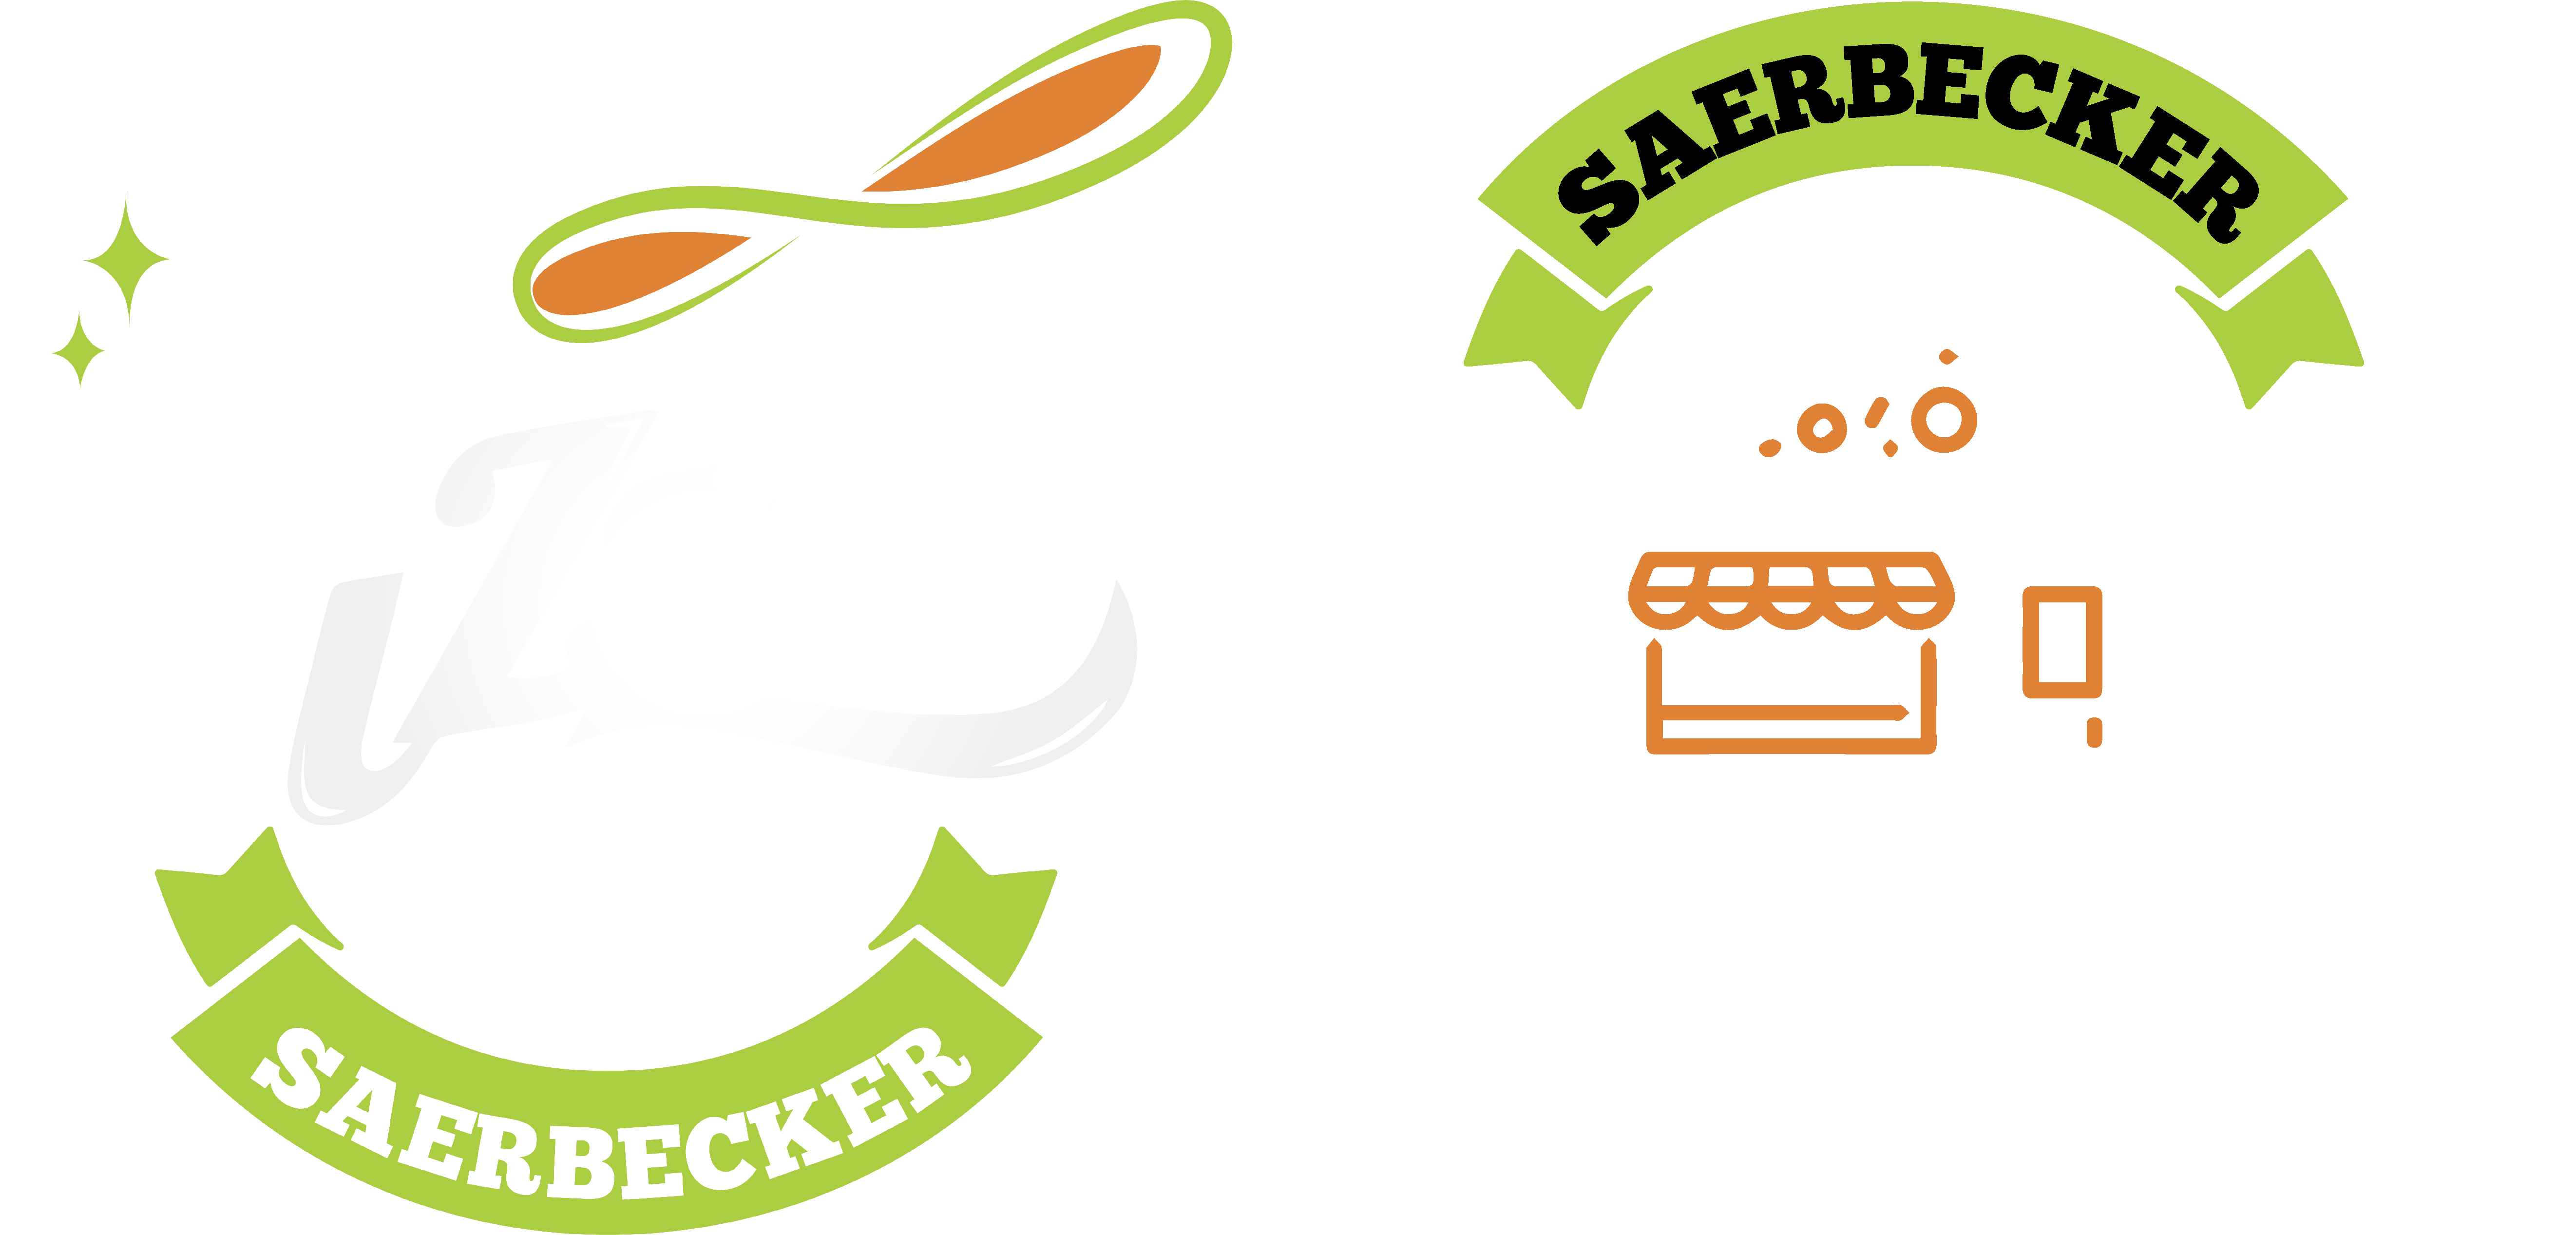 pizzawagen saerbecker